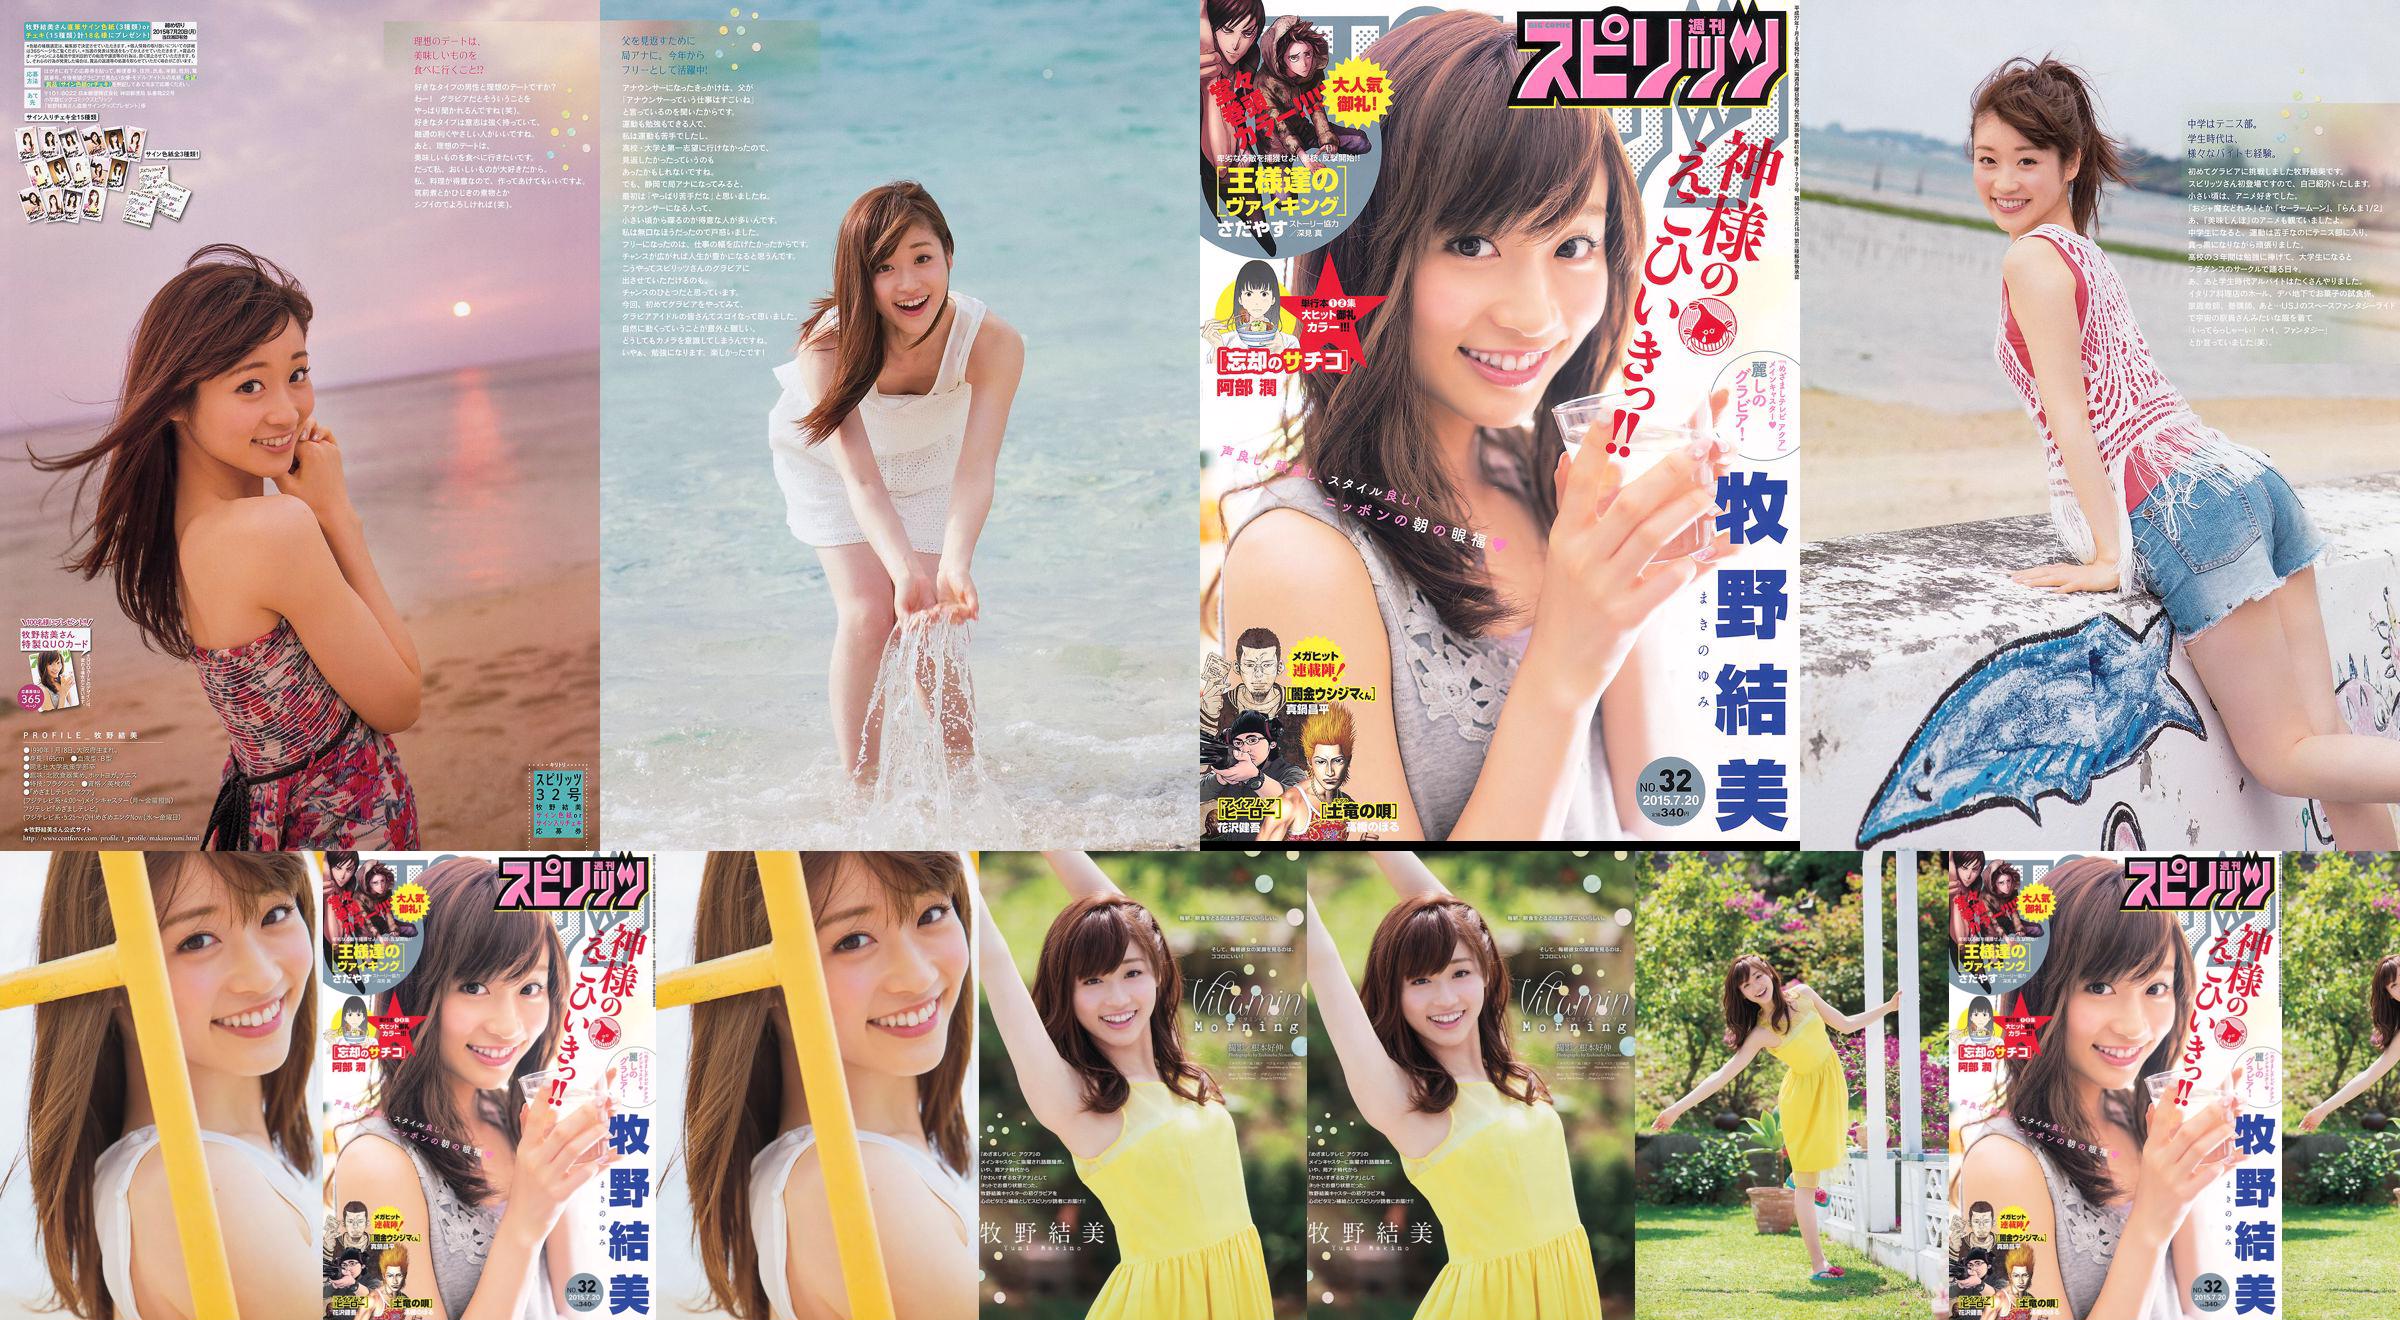 [Weekly Big Comic Spirits] Yumi Makino 2015 No.32 Photo Magazine No.04fc91 Page 4